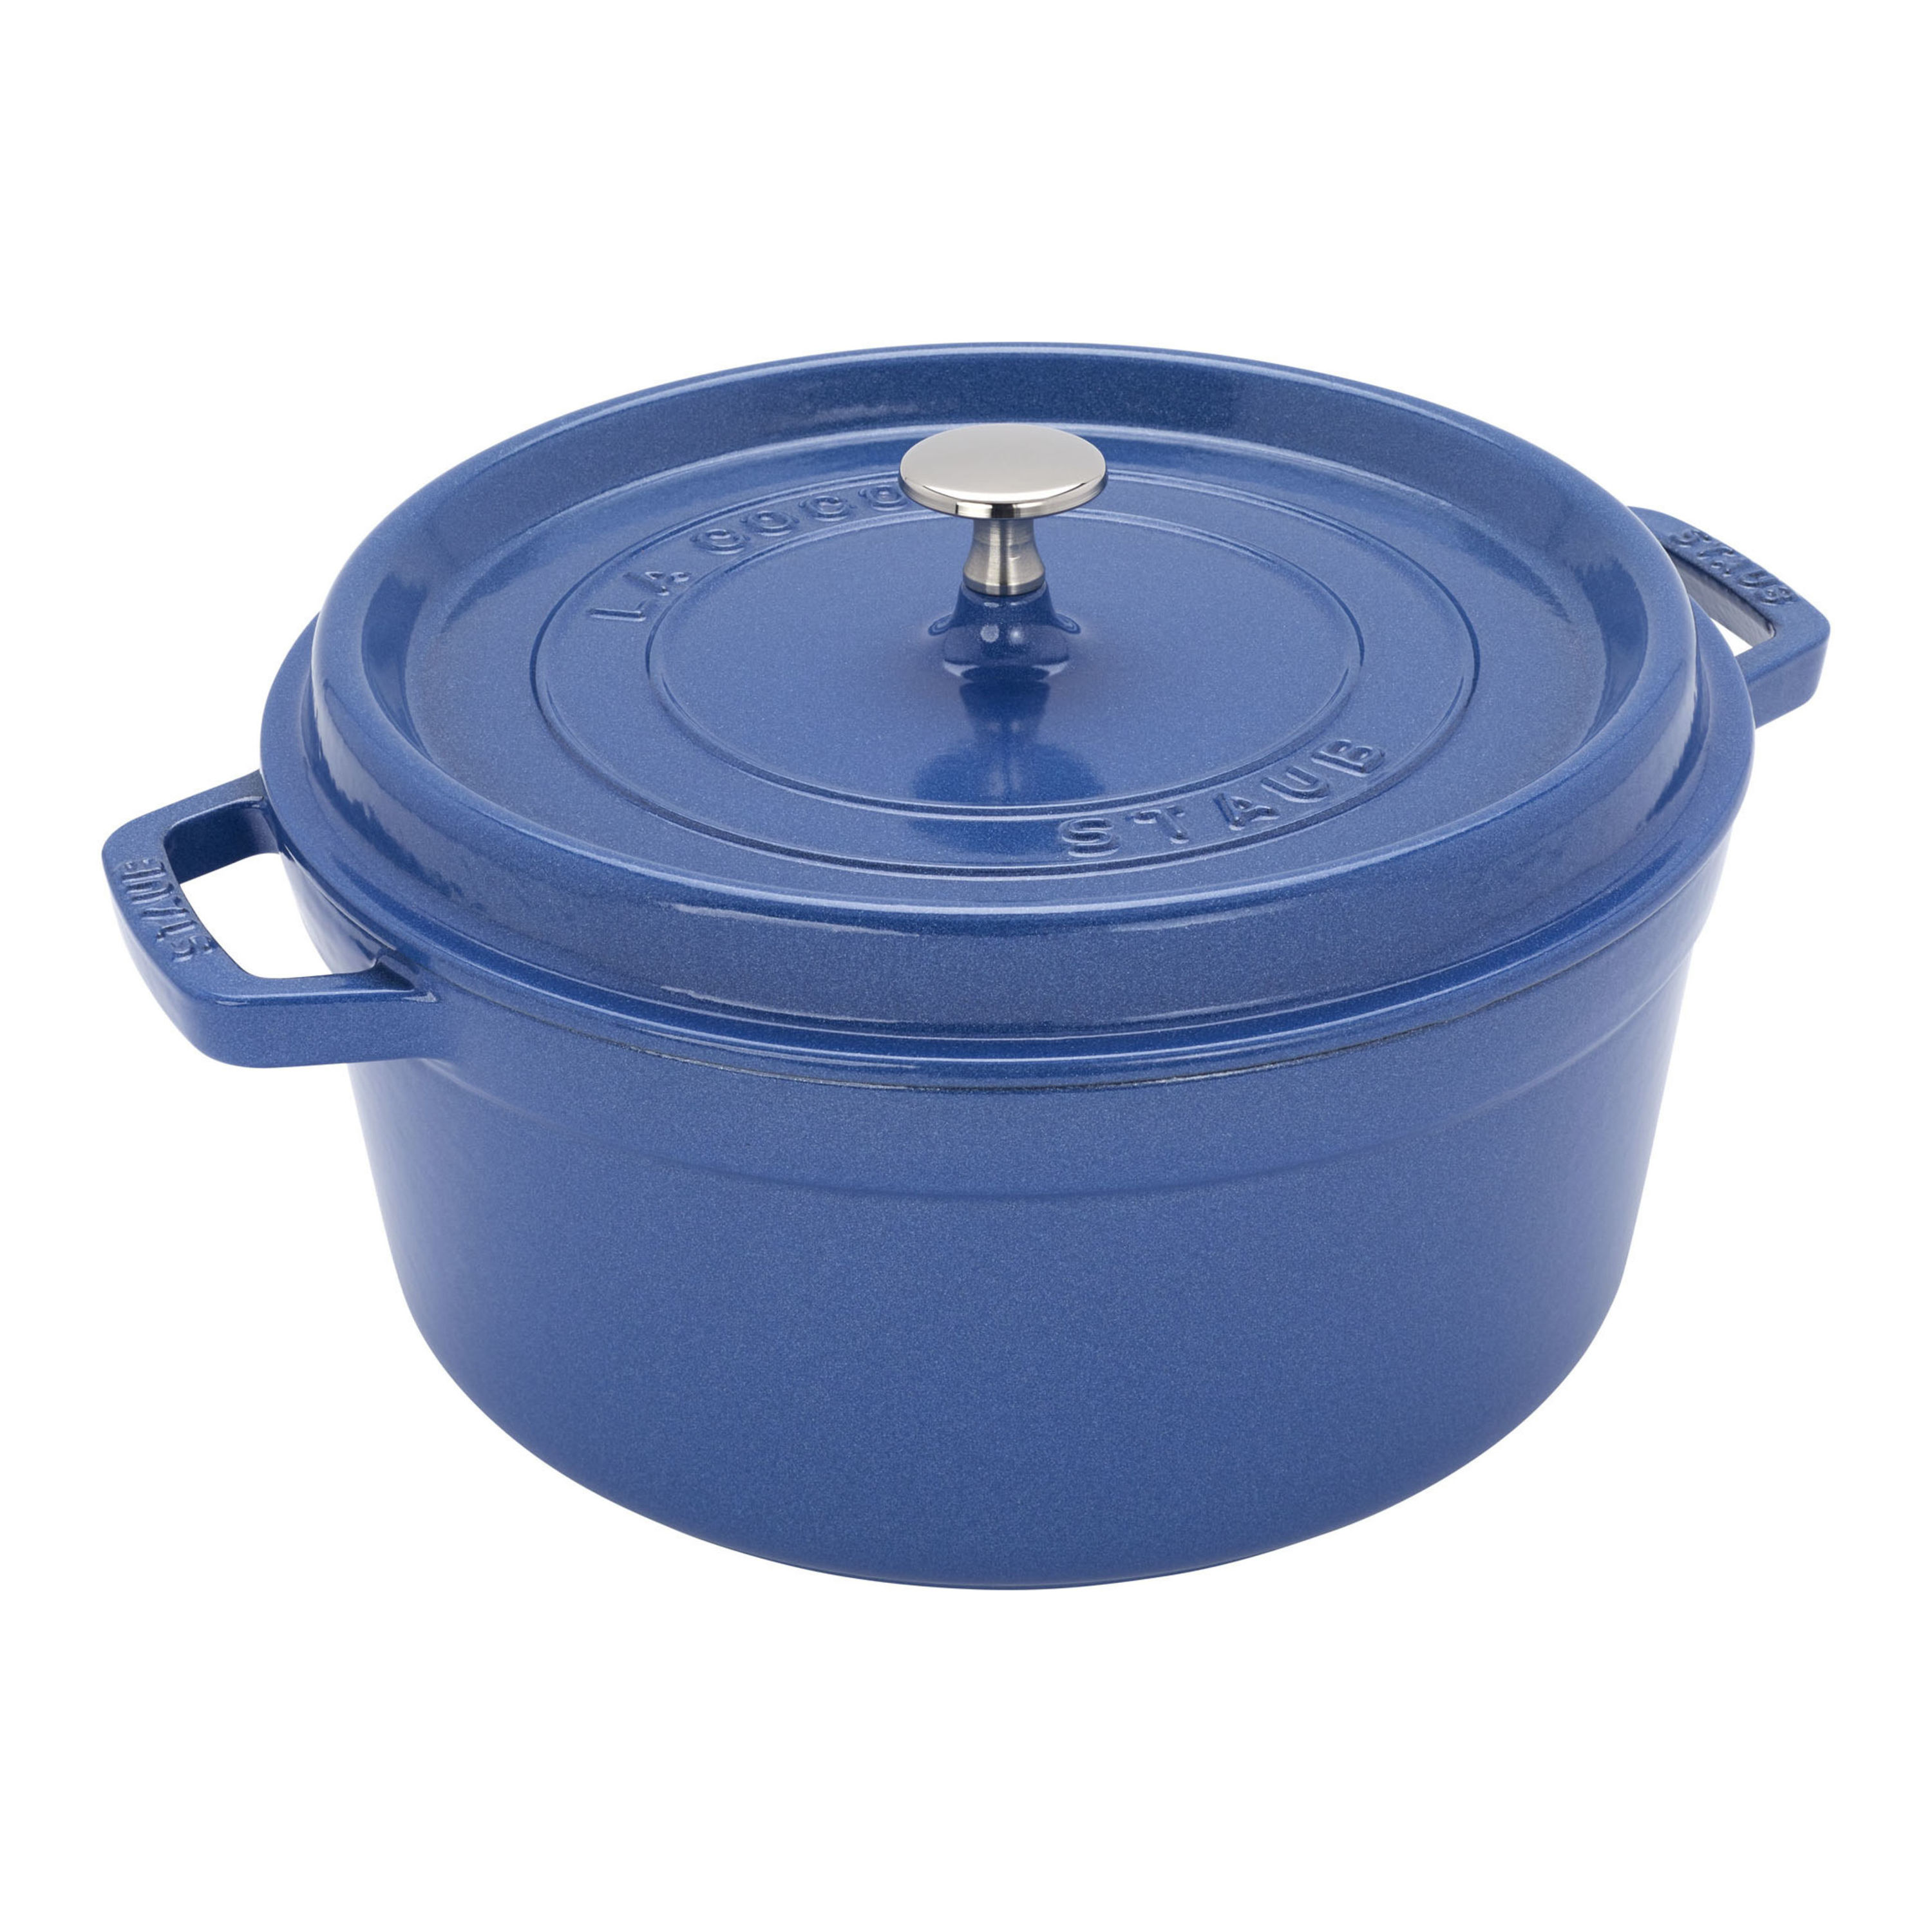  STAUB Cocotte Round 30cm Dark Blue: Home & Kitchen